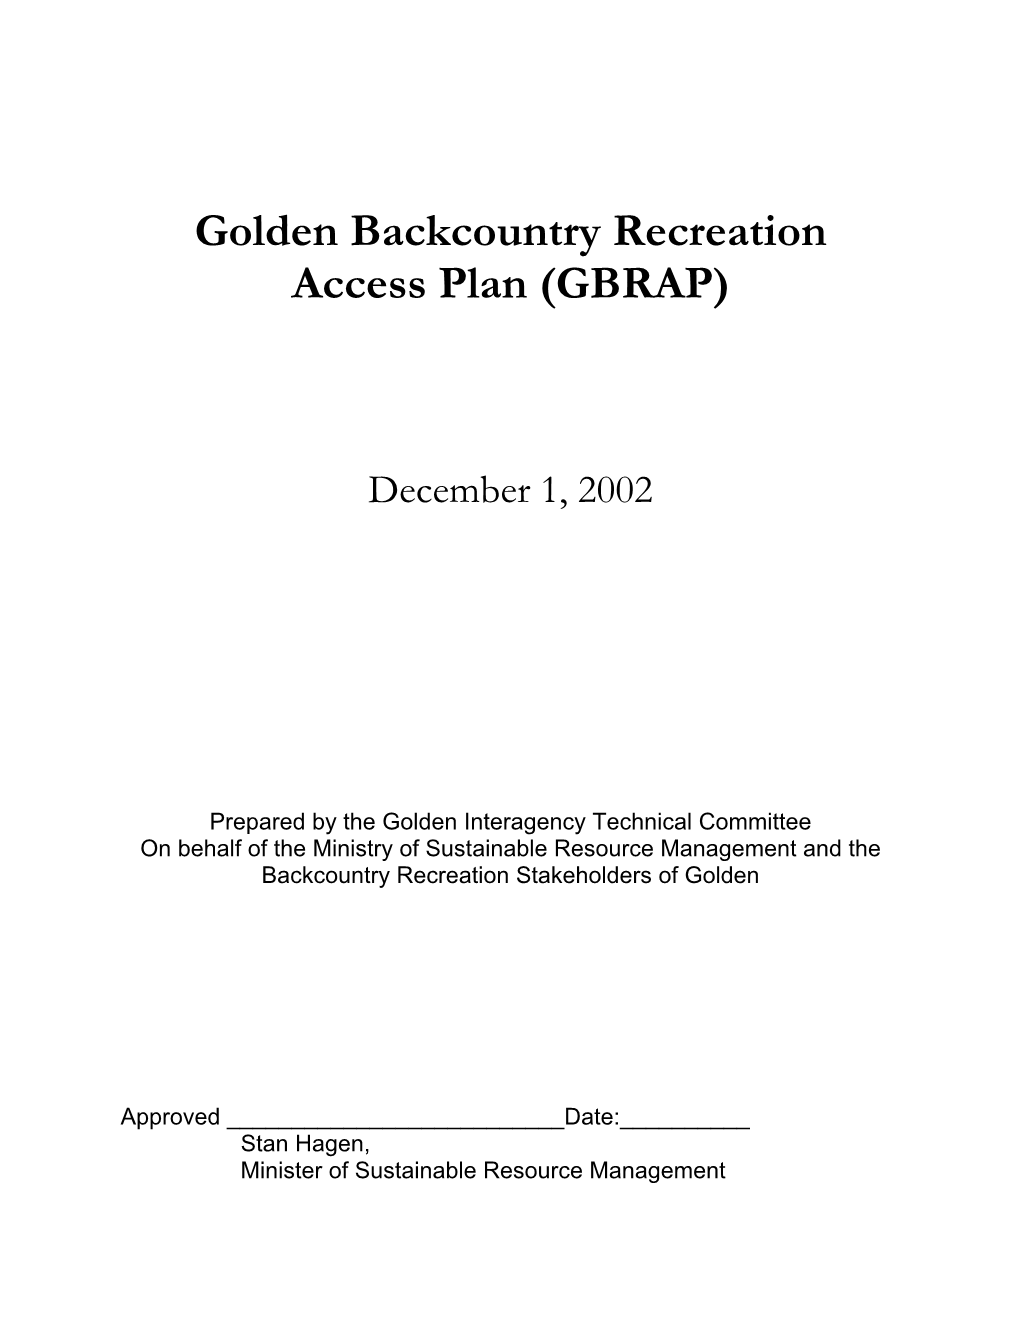 Golden Backcountry Recreation Access Plan (GBRAP)